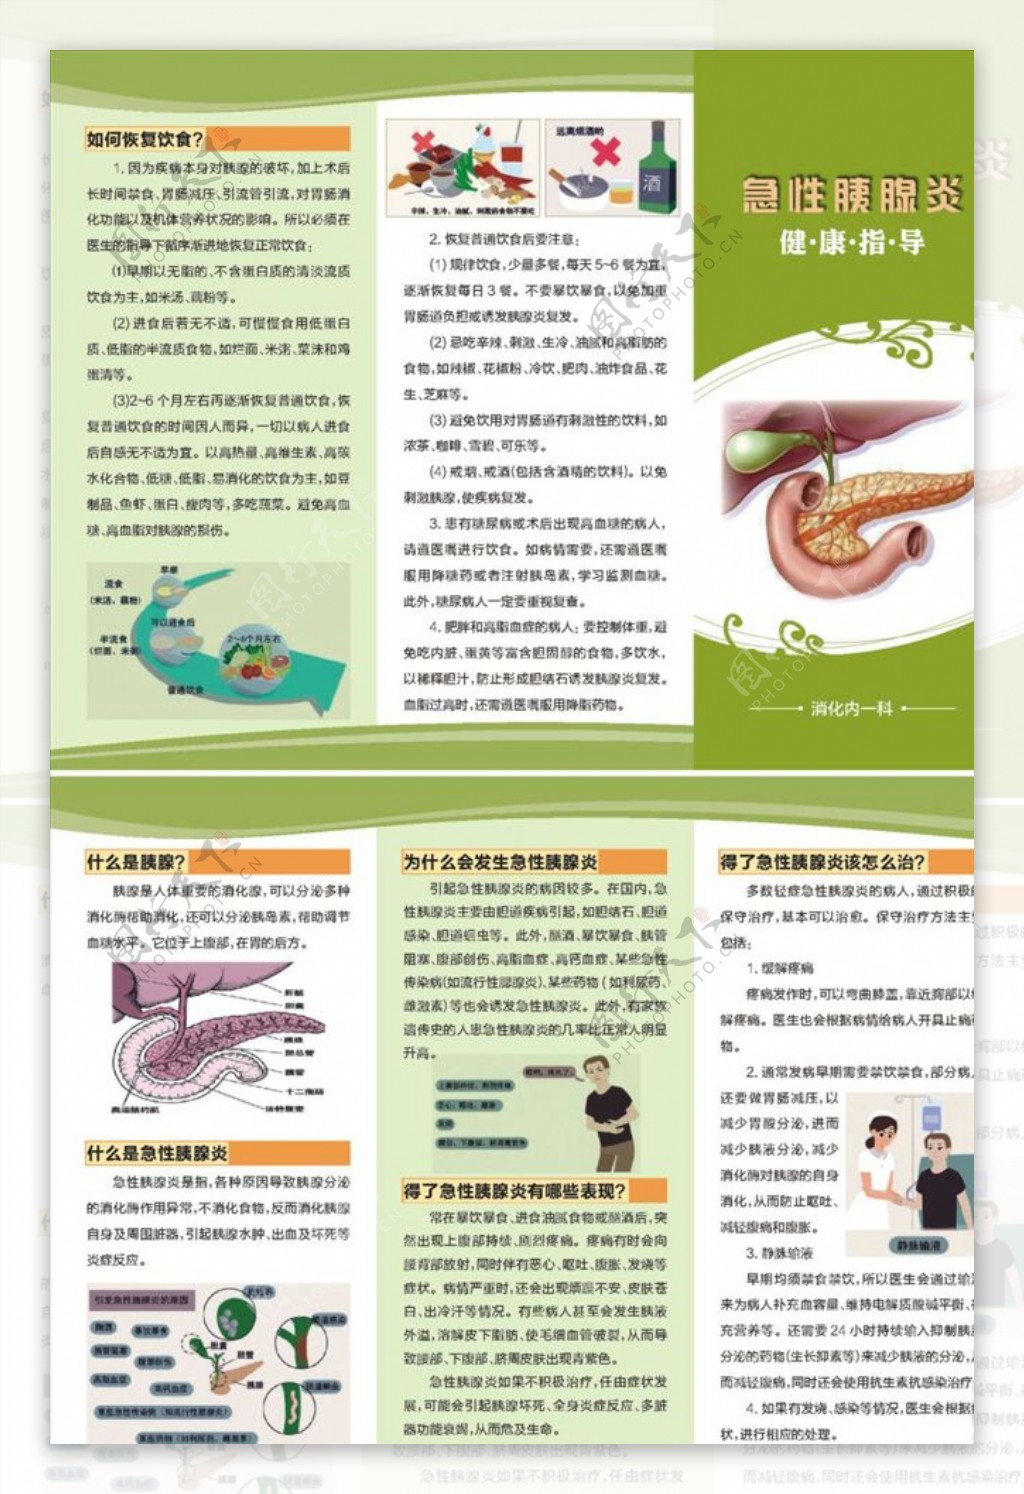 急性胰腺炎健康教育指导折页